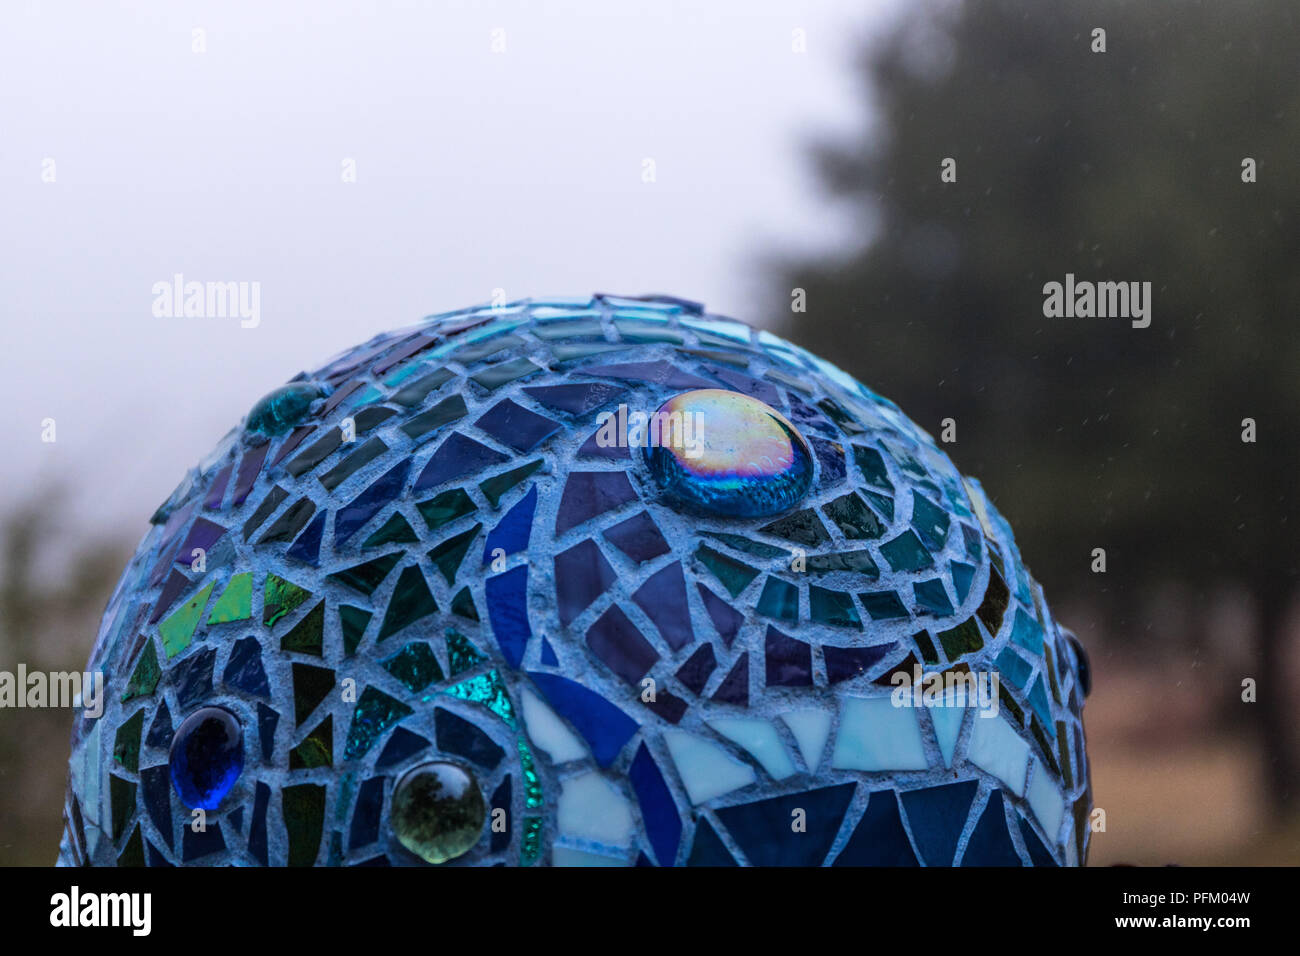 Nahaufnahme von Mosaik garten Kugel in Blau in Swirl Muster aus buntem Glas Fliesen, abstrakte Design Stockfoto